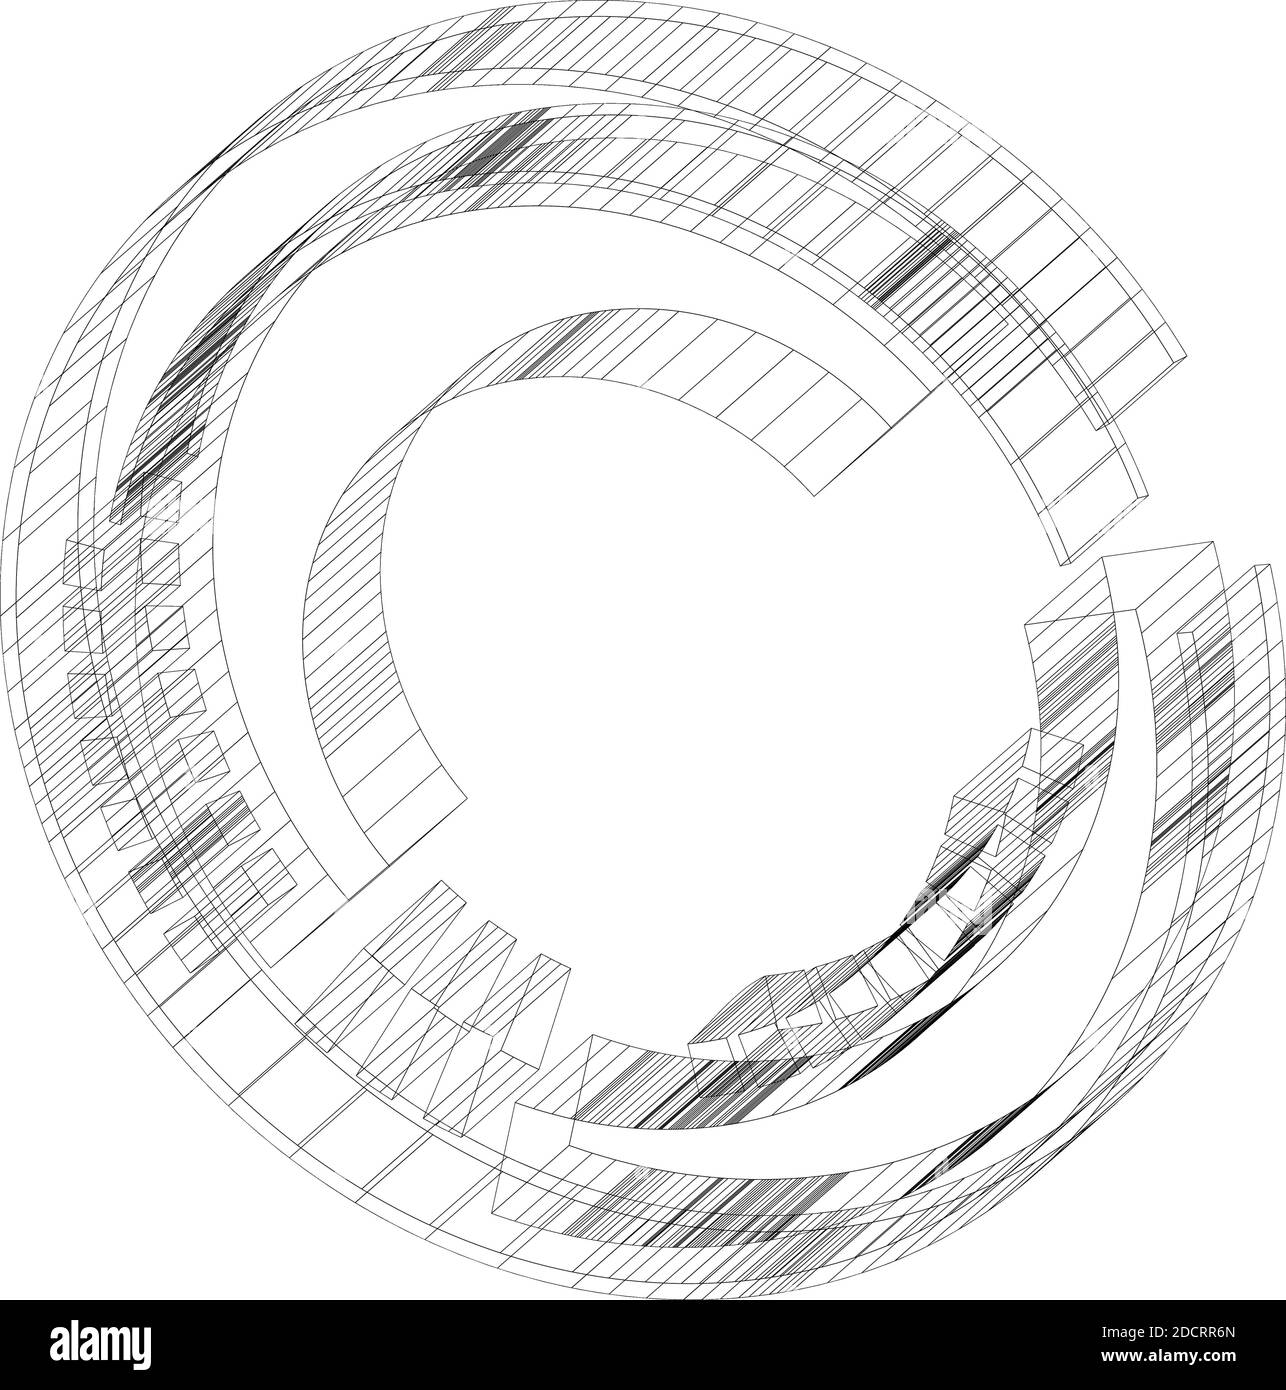 Oggetto 3d wire-frame - Sci-fi geometrico, Cybernetica, cerchio segmentato Cyber, elemento di design ad anello. HUD astratto, GUI, UI forma circolare – vettore stock Illustrazione Vettoriale